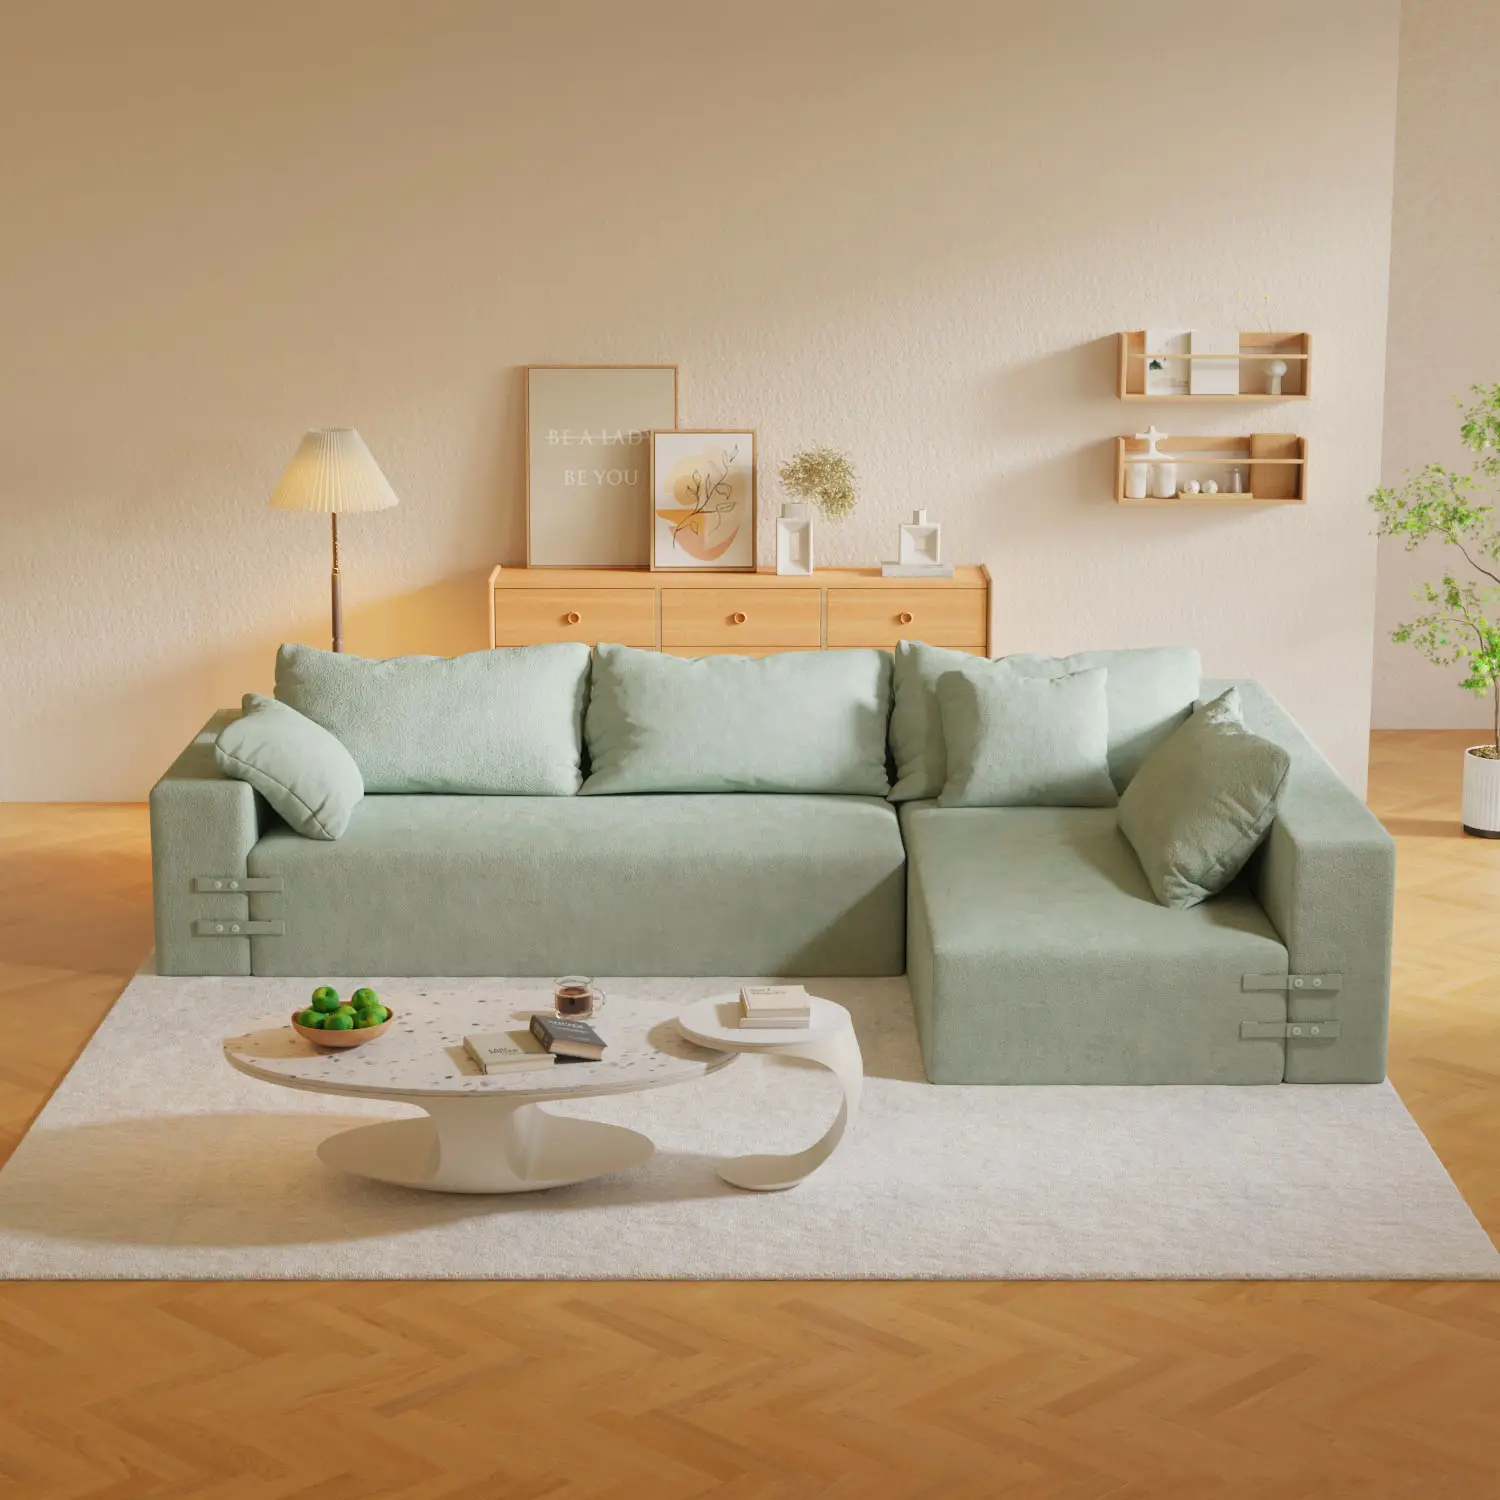 Personalizzare L/I forma 3 + 1 posto componibile componibile soggiorno divano divano Set modulare combinazione modulare soggiorno divano letto